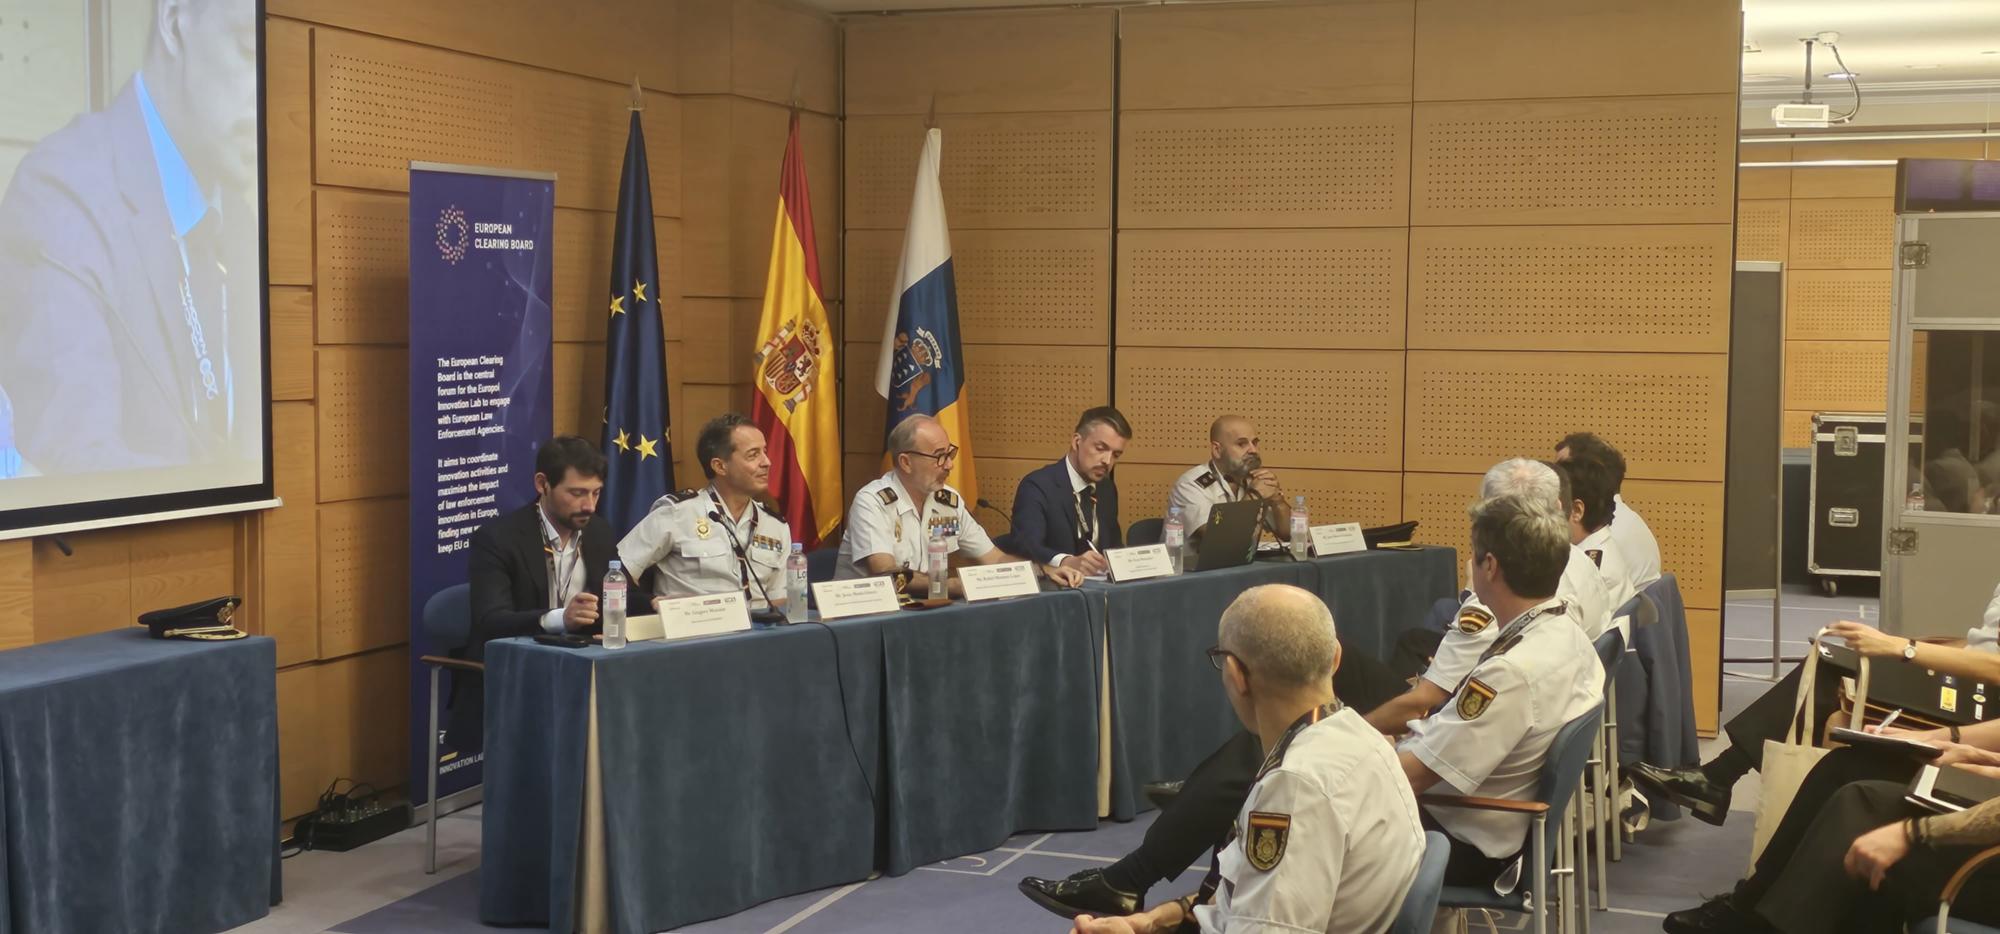 La Policía Nacional organiza el EuCB Plenary Meeting para convertir innovación y desarrollo en soluciones prácticas policiales